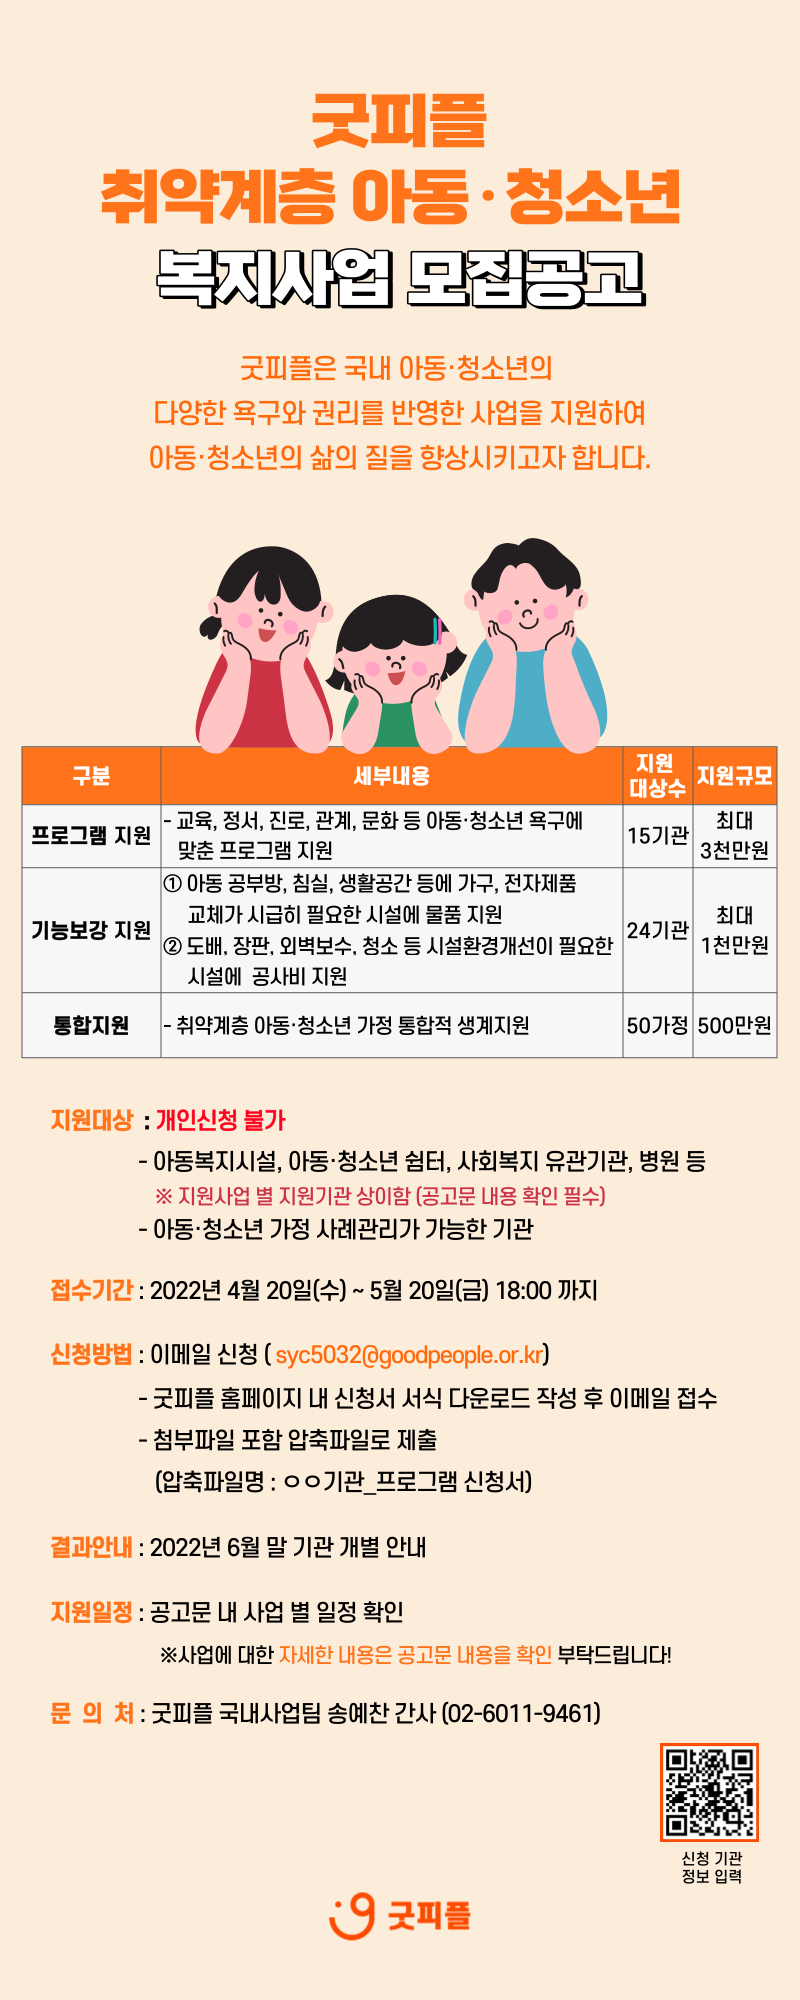 굿피플 취약계층 아동·청소년 복지사업 홍보 포스터.png